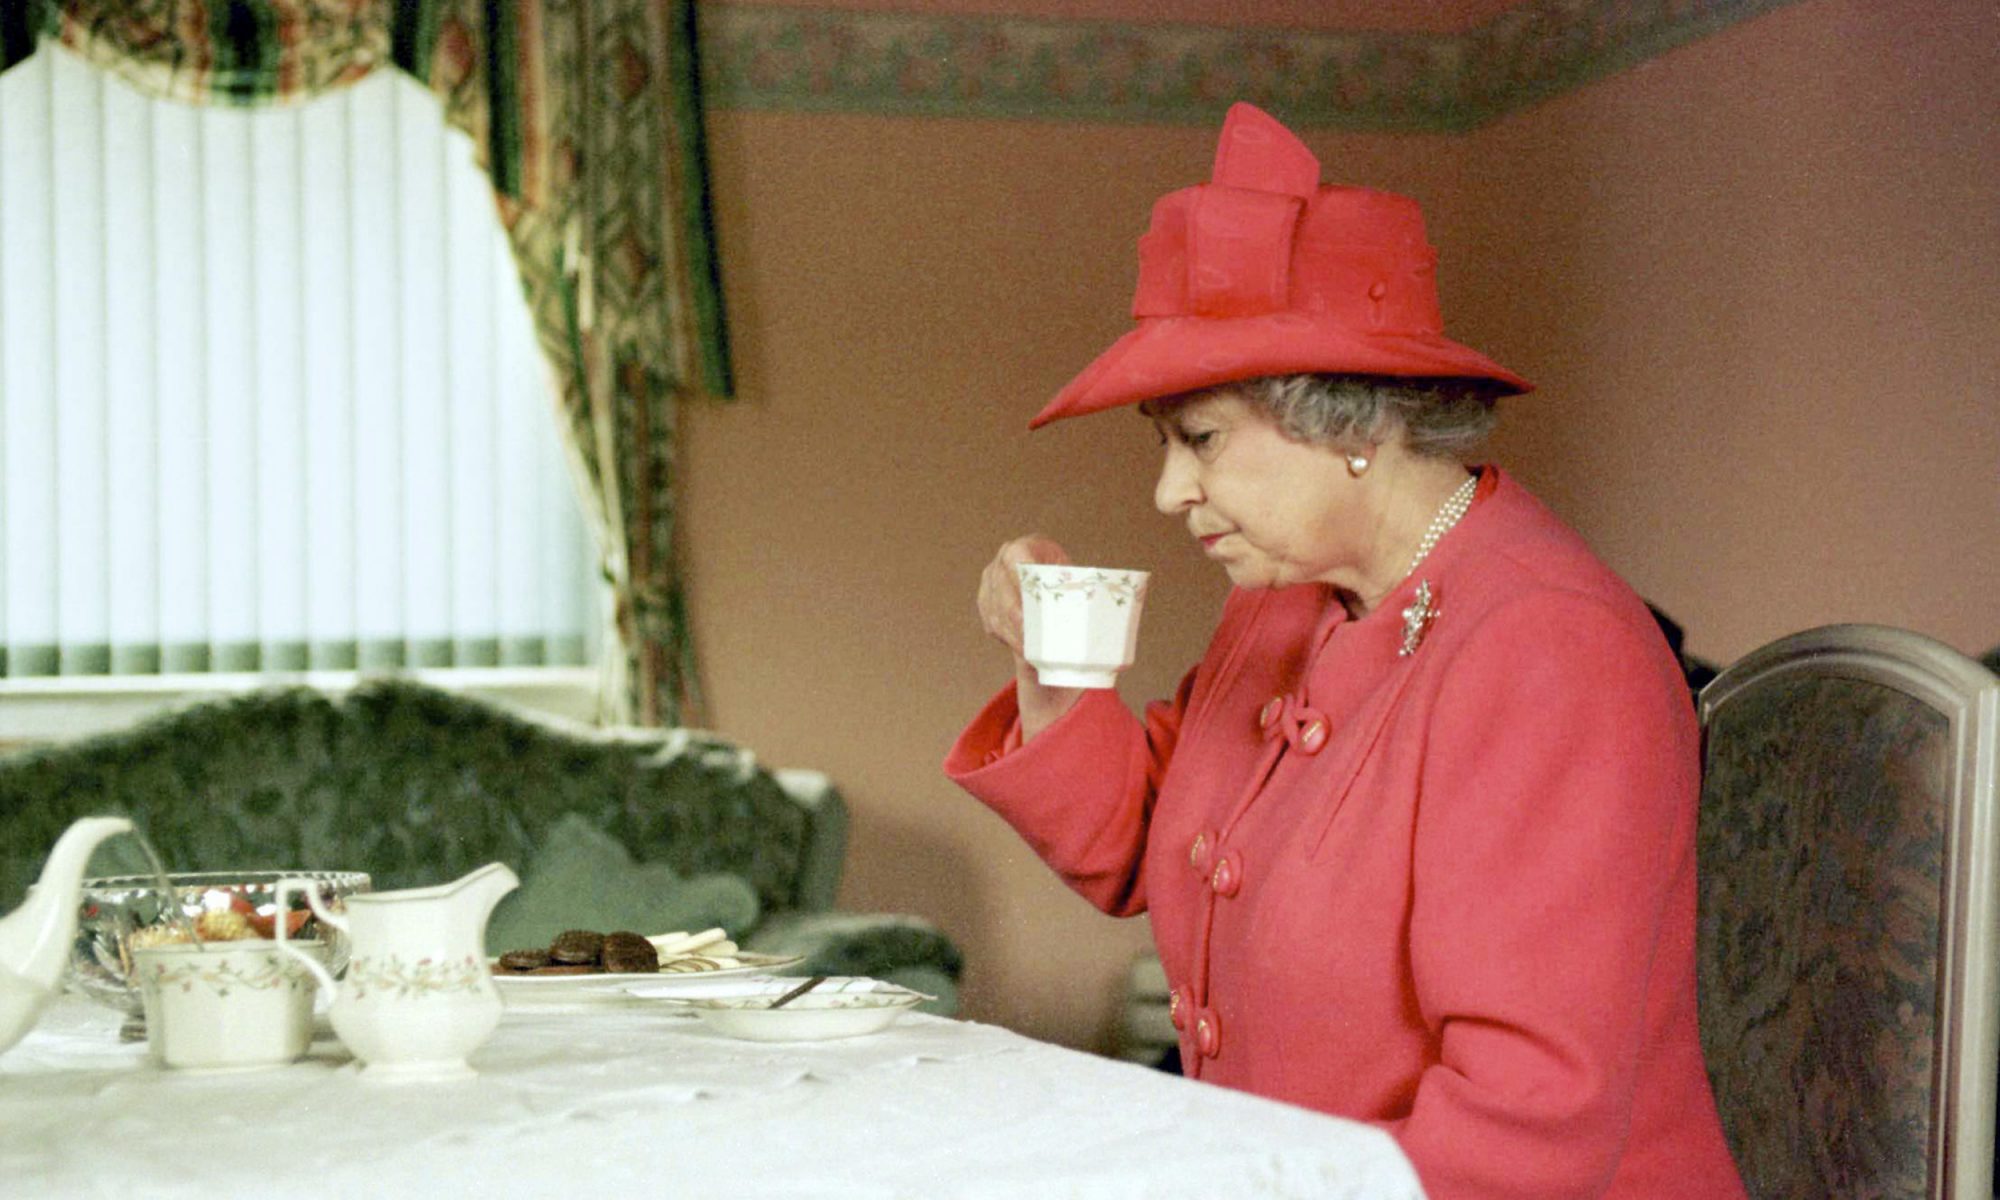 EC: The Queen of England Eats Breakfast Before Breakfast